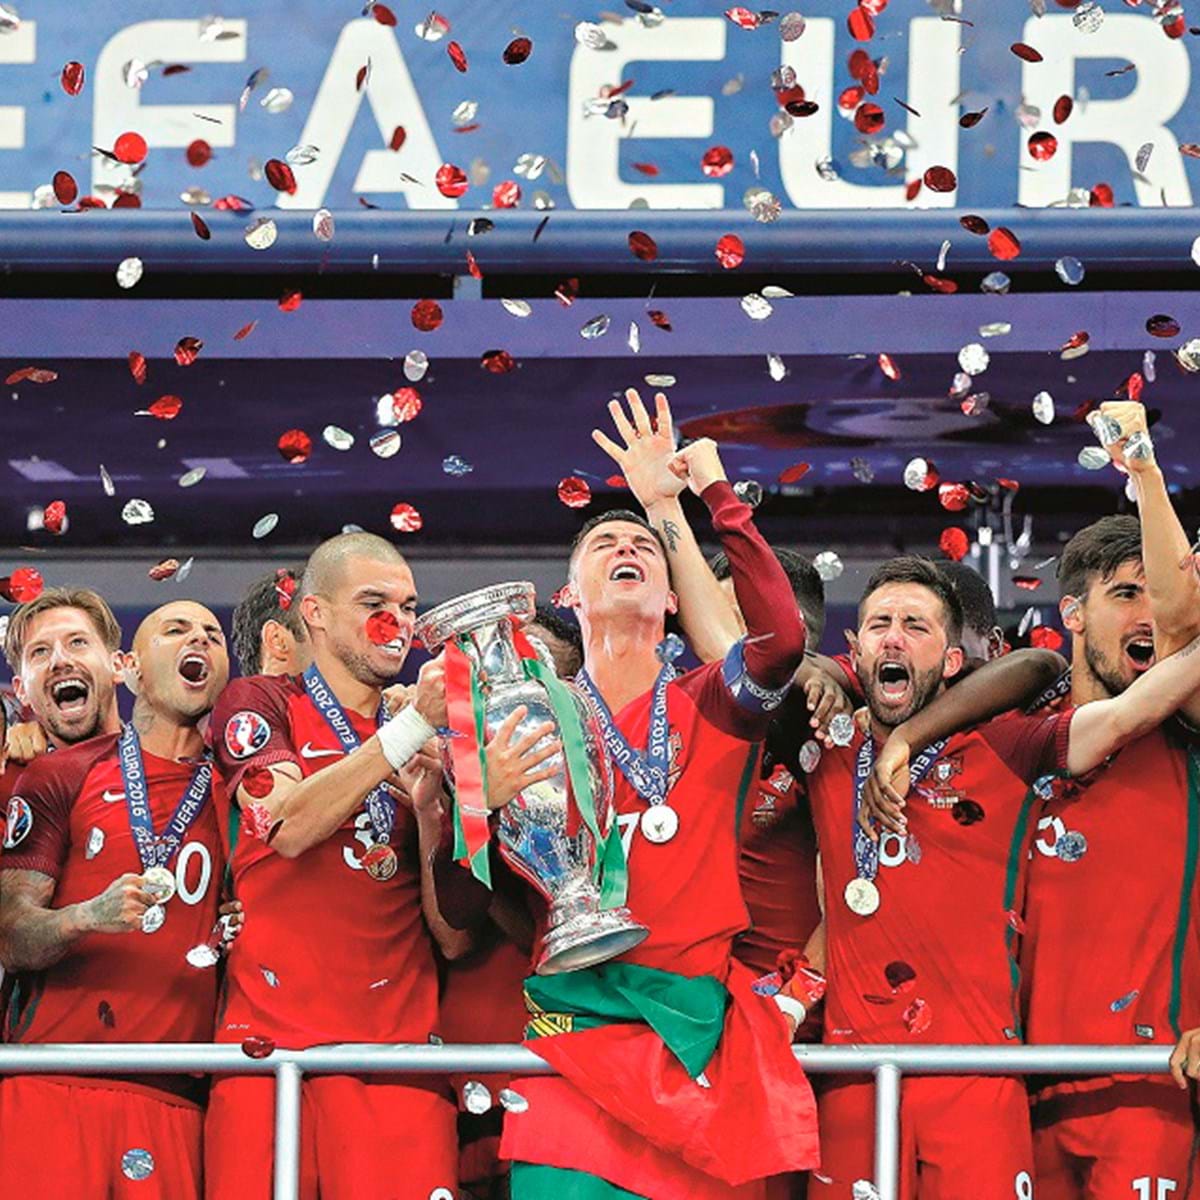 Há sete anos Portugal conquistava o Europeu: onde estão os 23 campeões? -  SIC Notícias